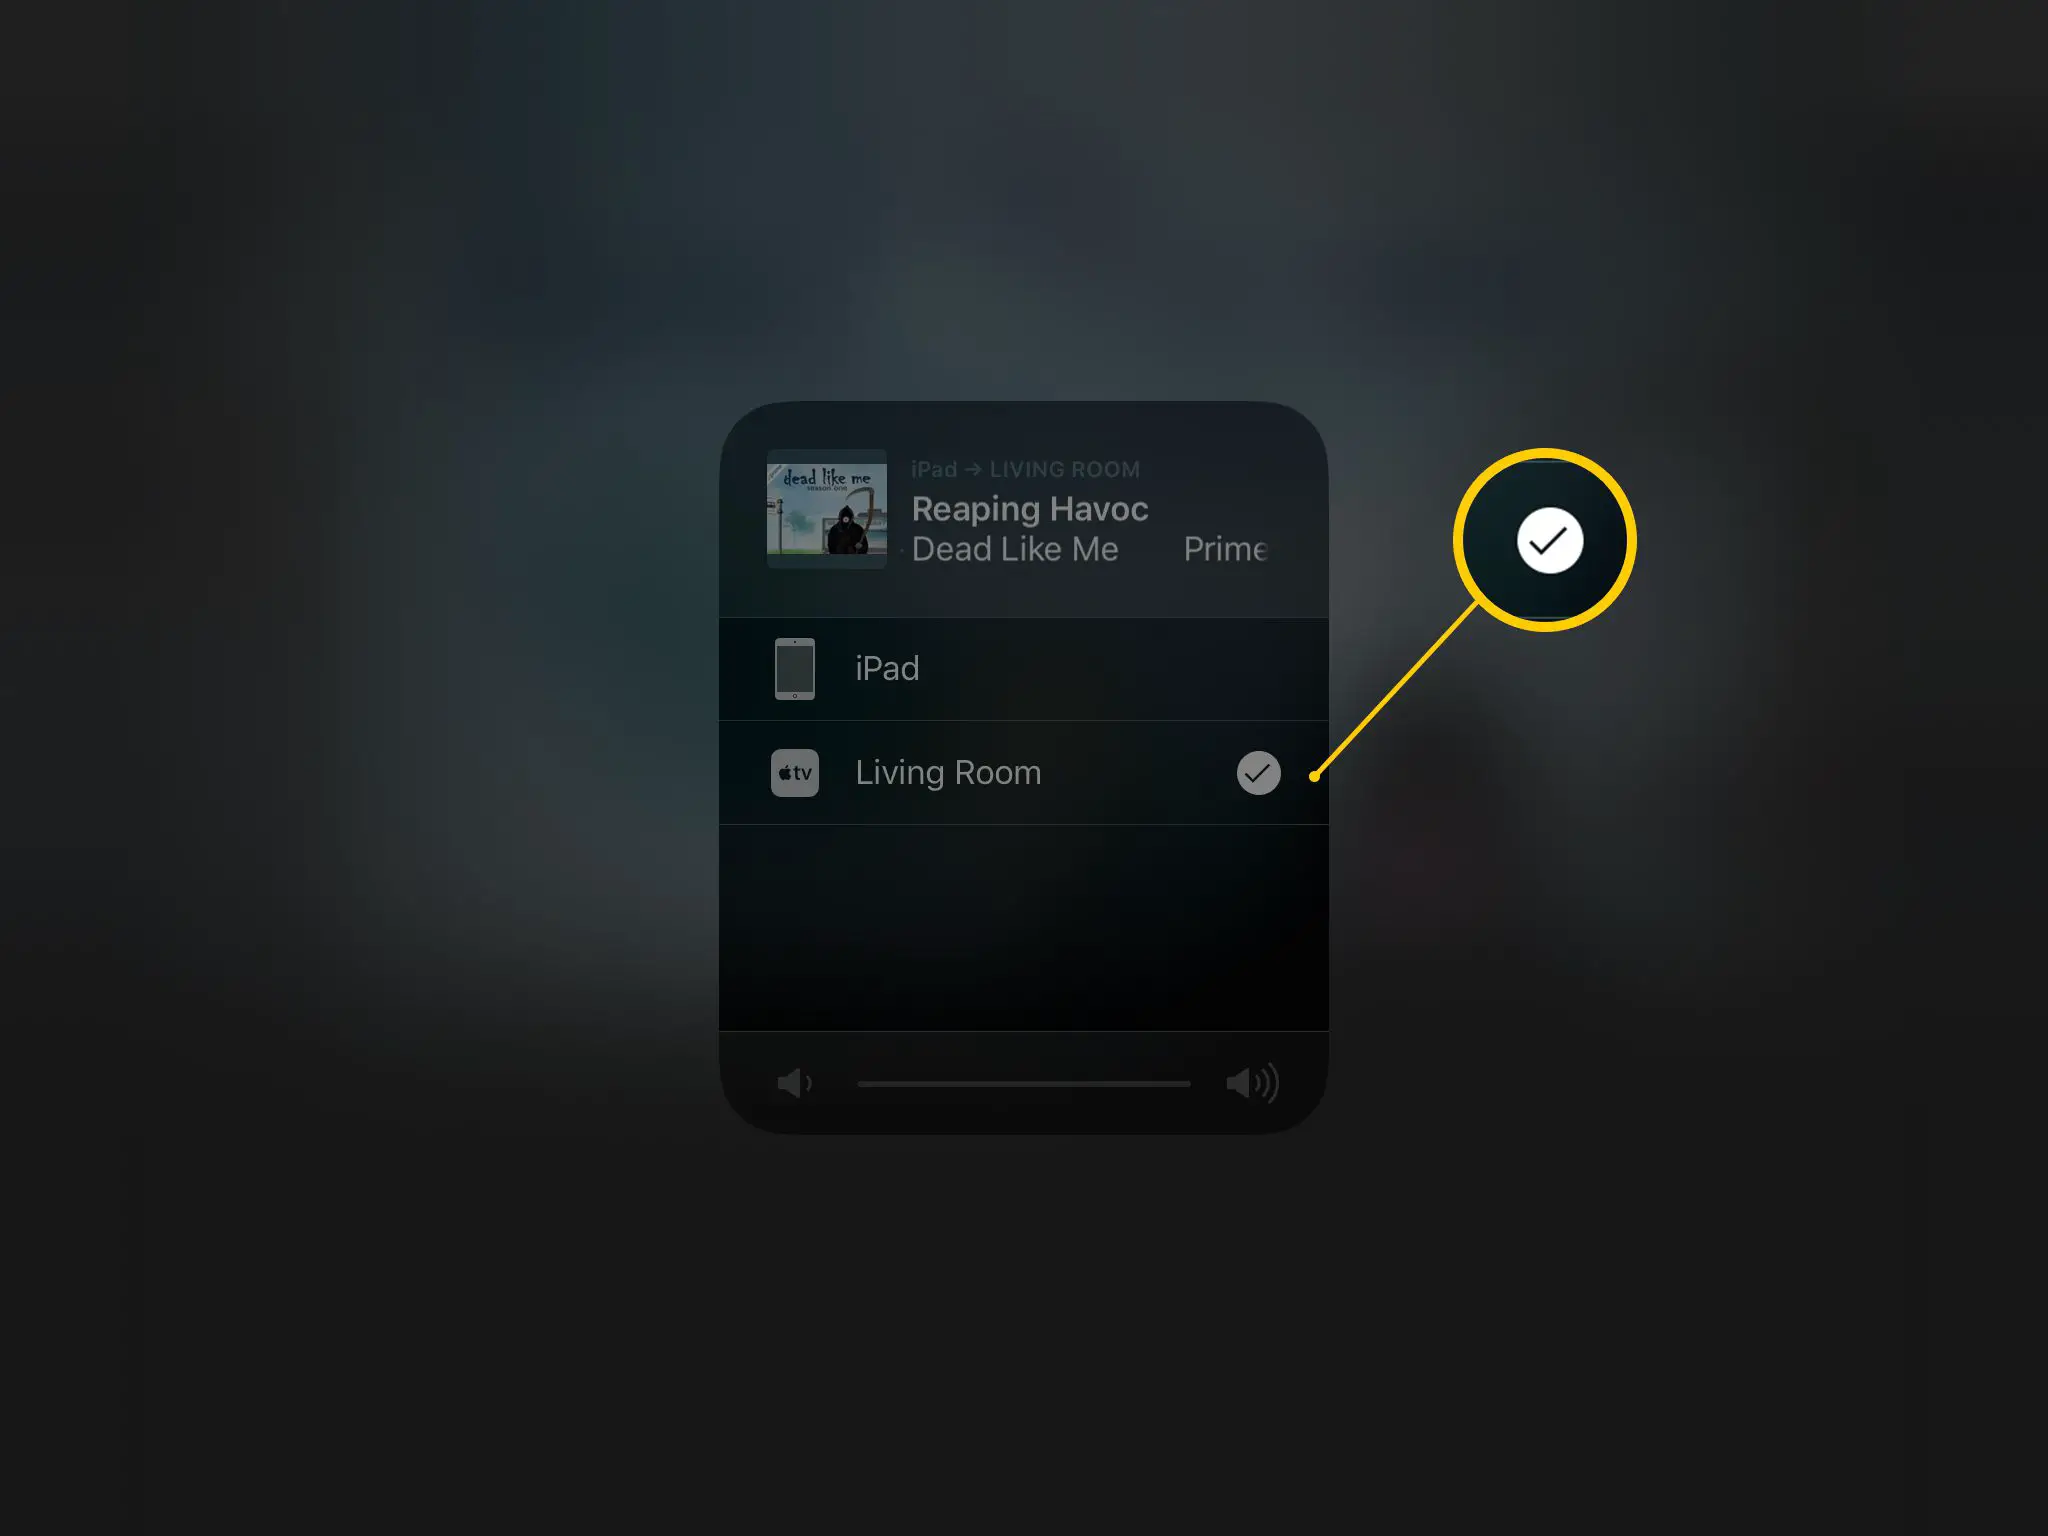 Captura de tela do seletor de AirPlay no iPad, mostrando o Living Room Apple TV selecionado